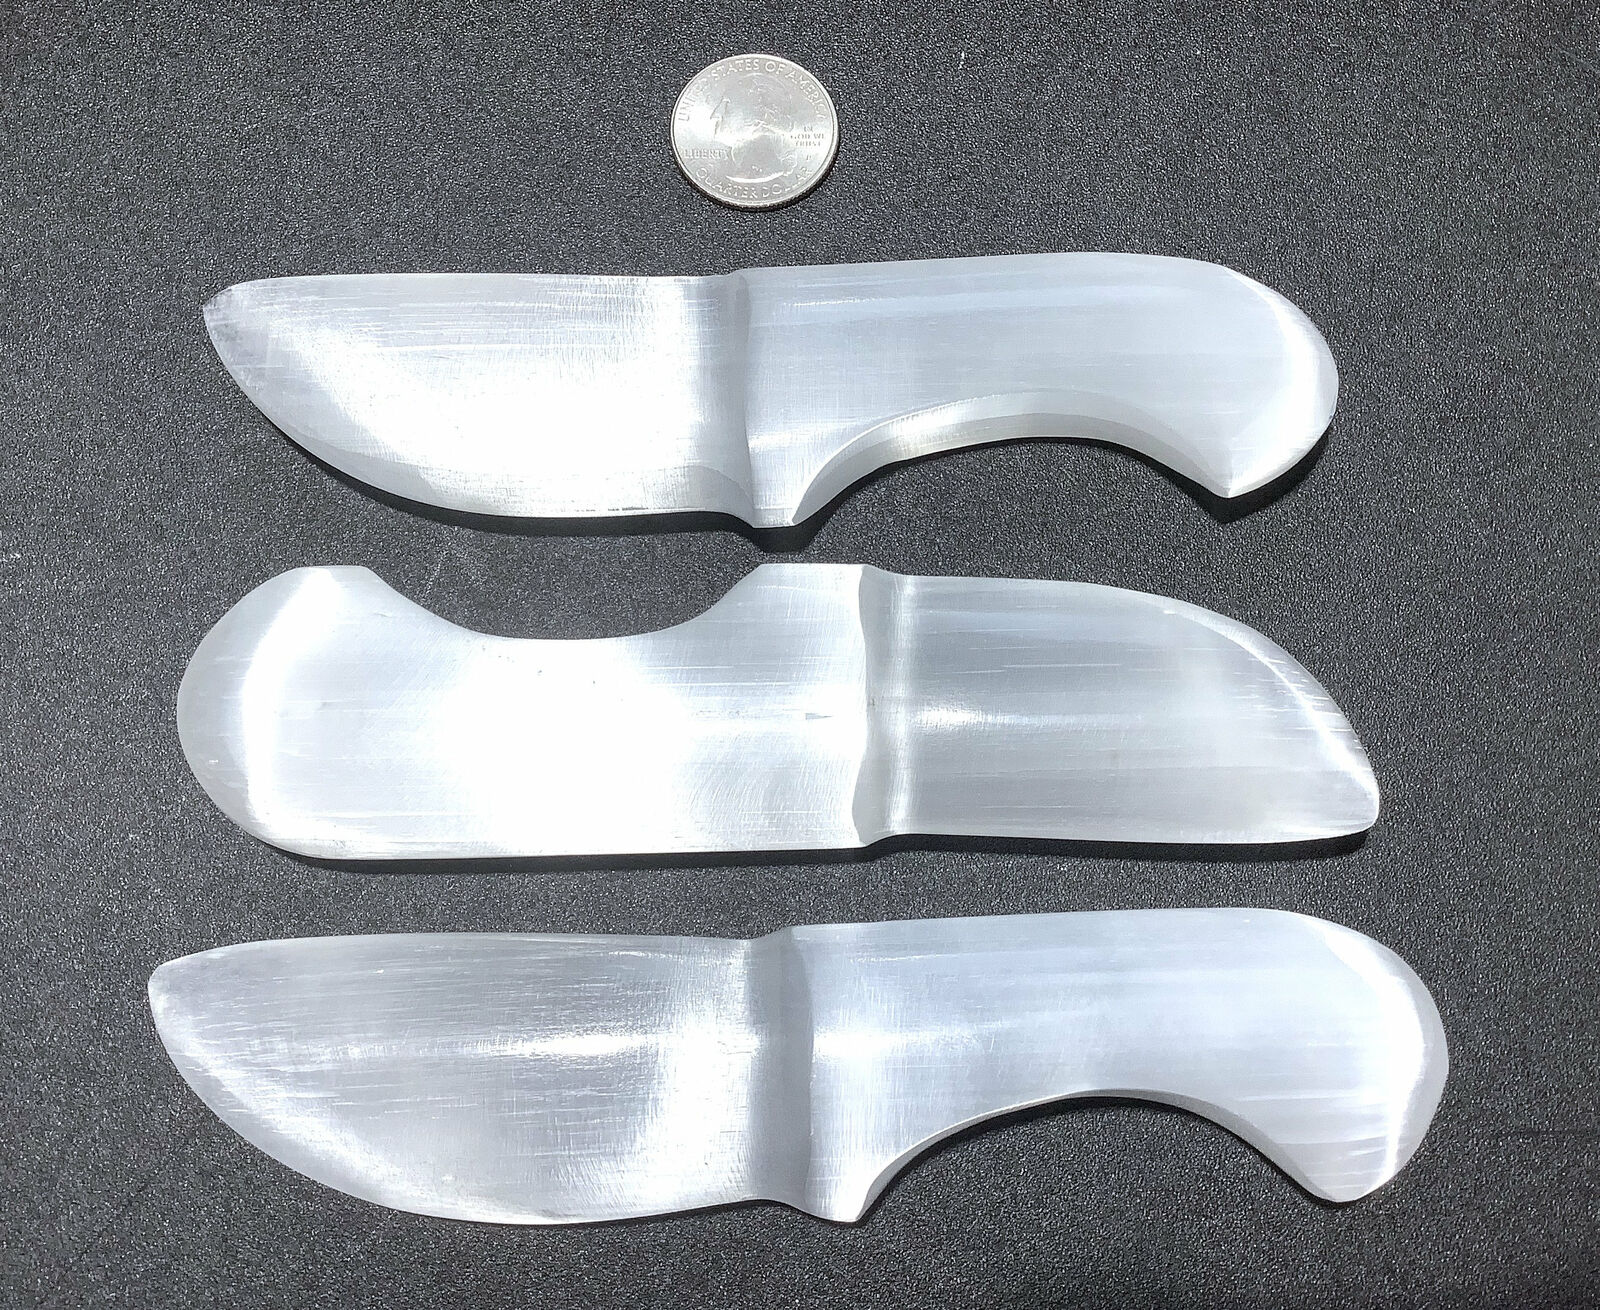 Selenite Knife - White Crystal Dagger - Polished Carved Gemstone Blade